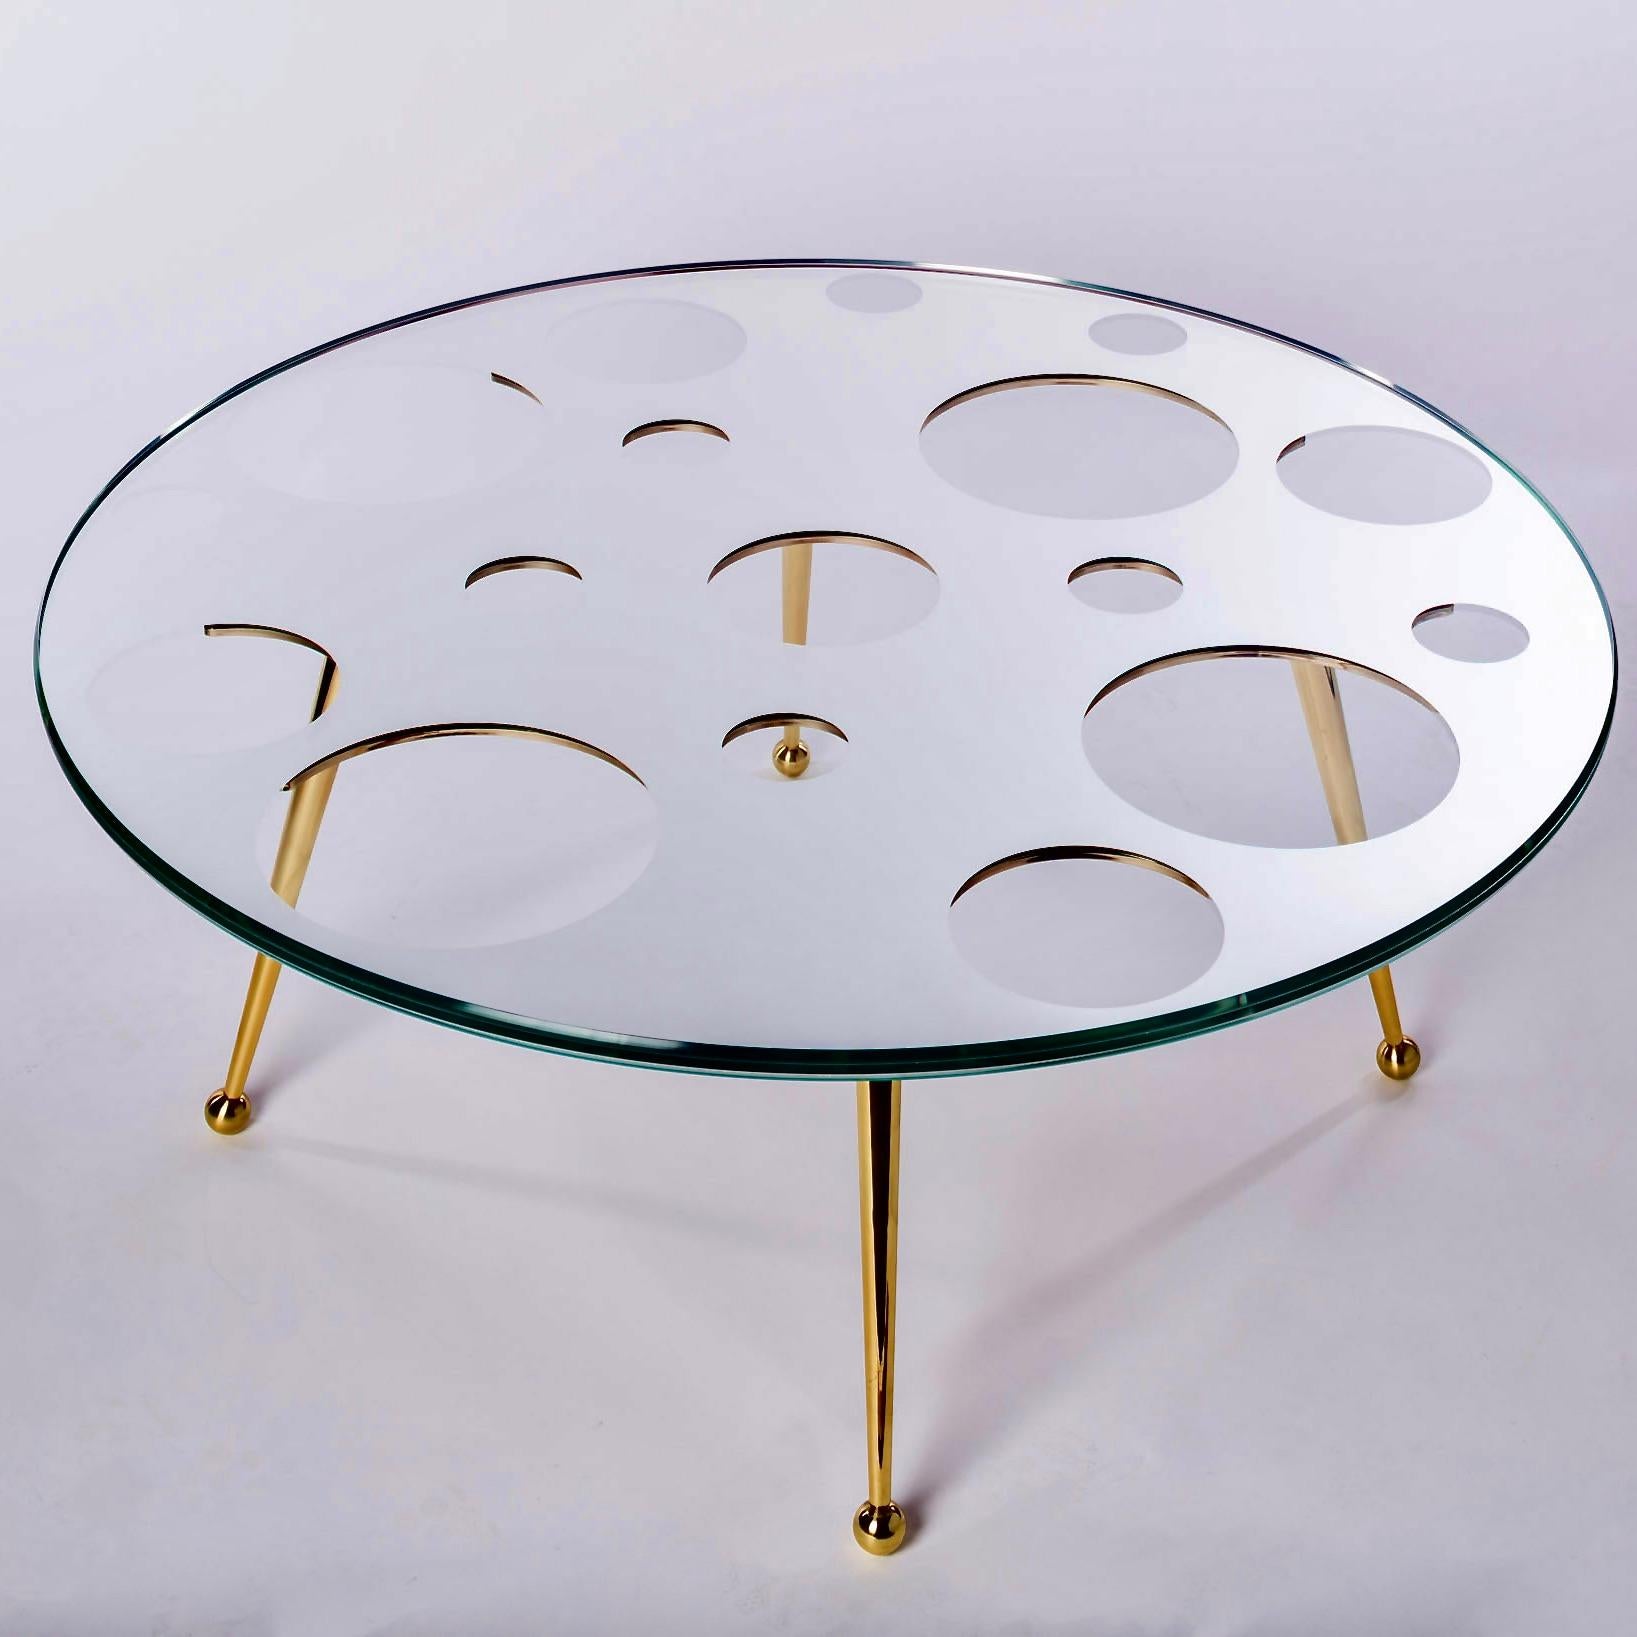 La table basse Holy Mirror est fabriquée à partir de pieds en laiton massif et possède un plateau en verre miroir fait main très inhabituel. 

La partie supérieure est fabriquée à partir de trois morceaux égaux de verre Starphire. La partie centrale